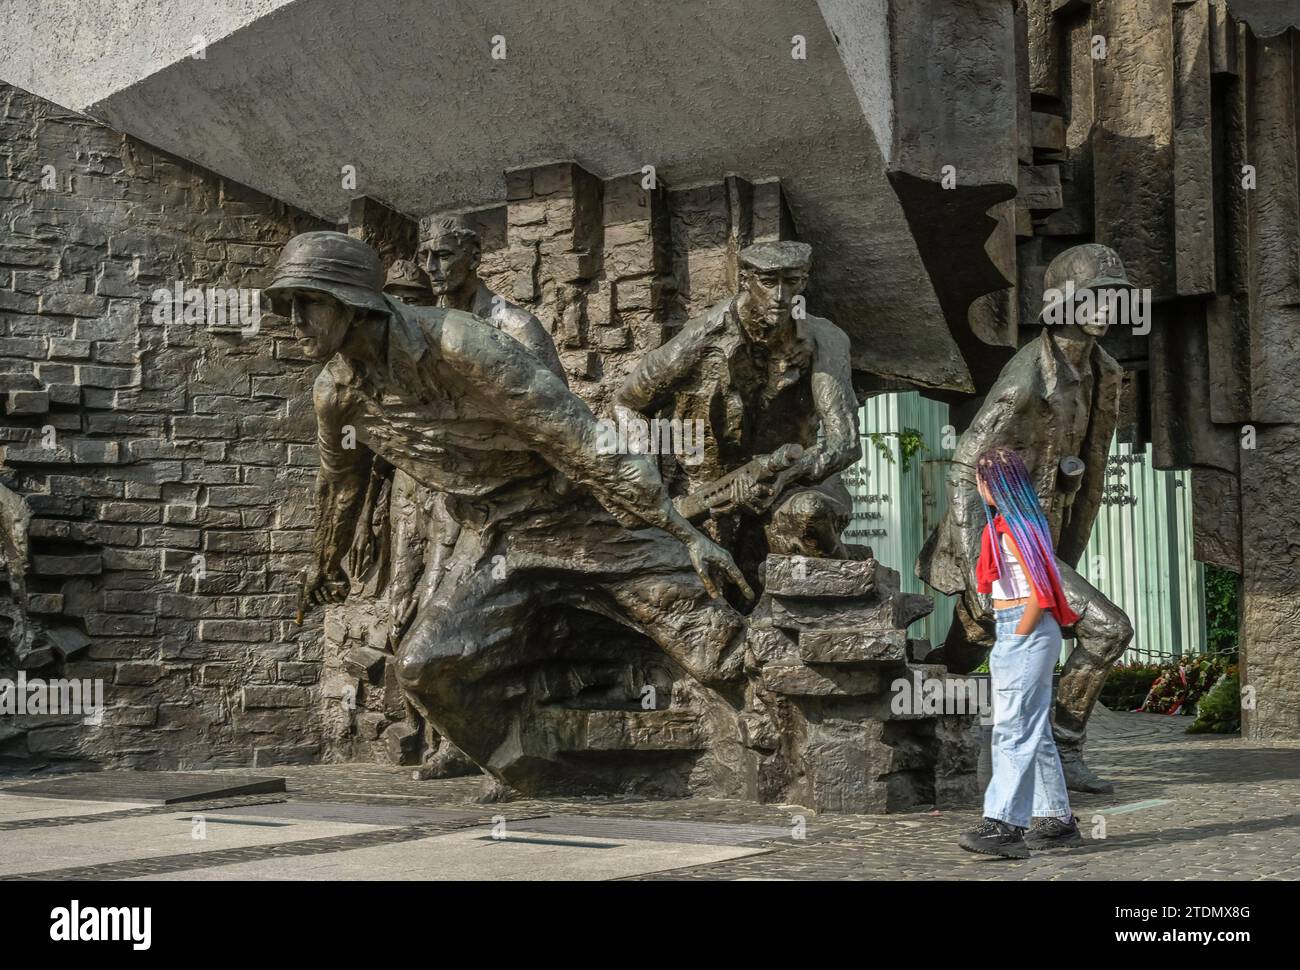 Denkmal des Warschauer Aufstände - Pomnik Powstania Warszawskiego, Plac Krasinskich, Warschau, Woiwodschaft Masowien, Polen Stockfoto